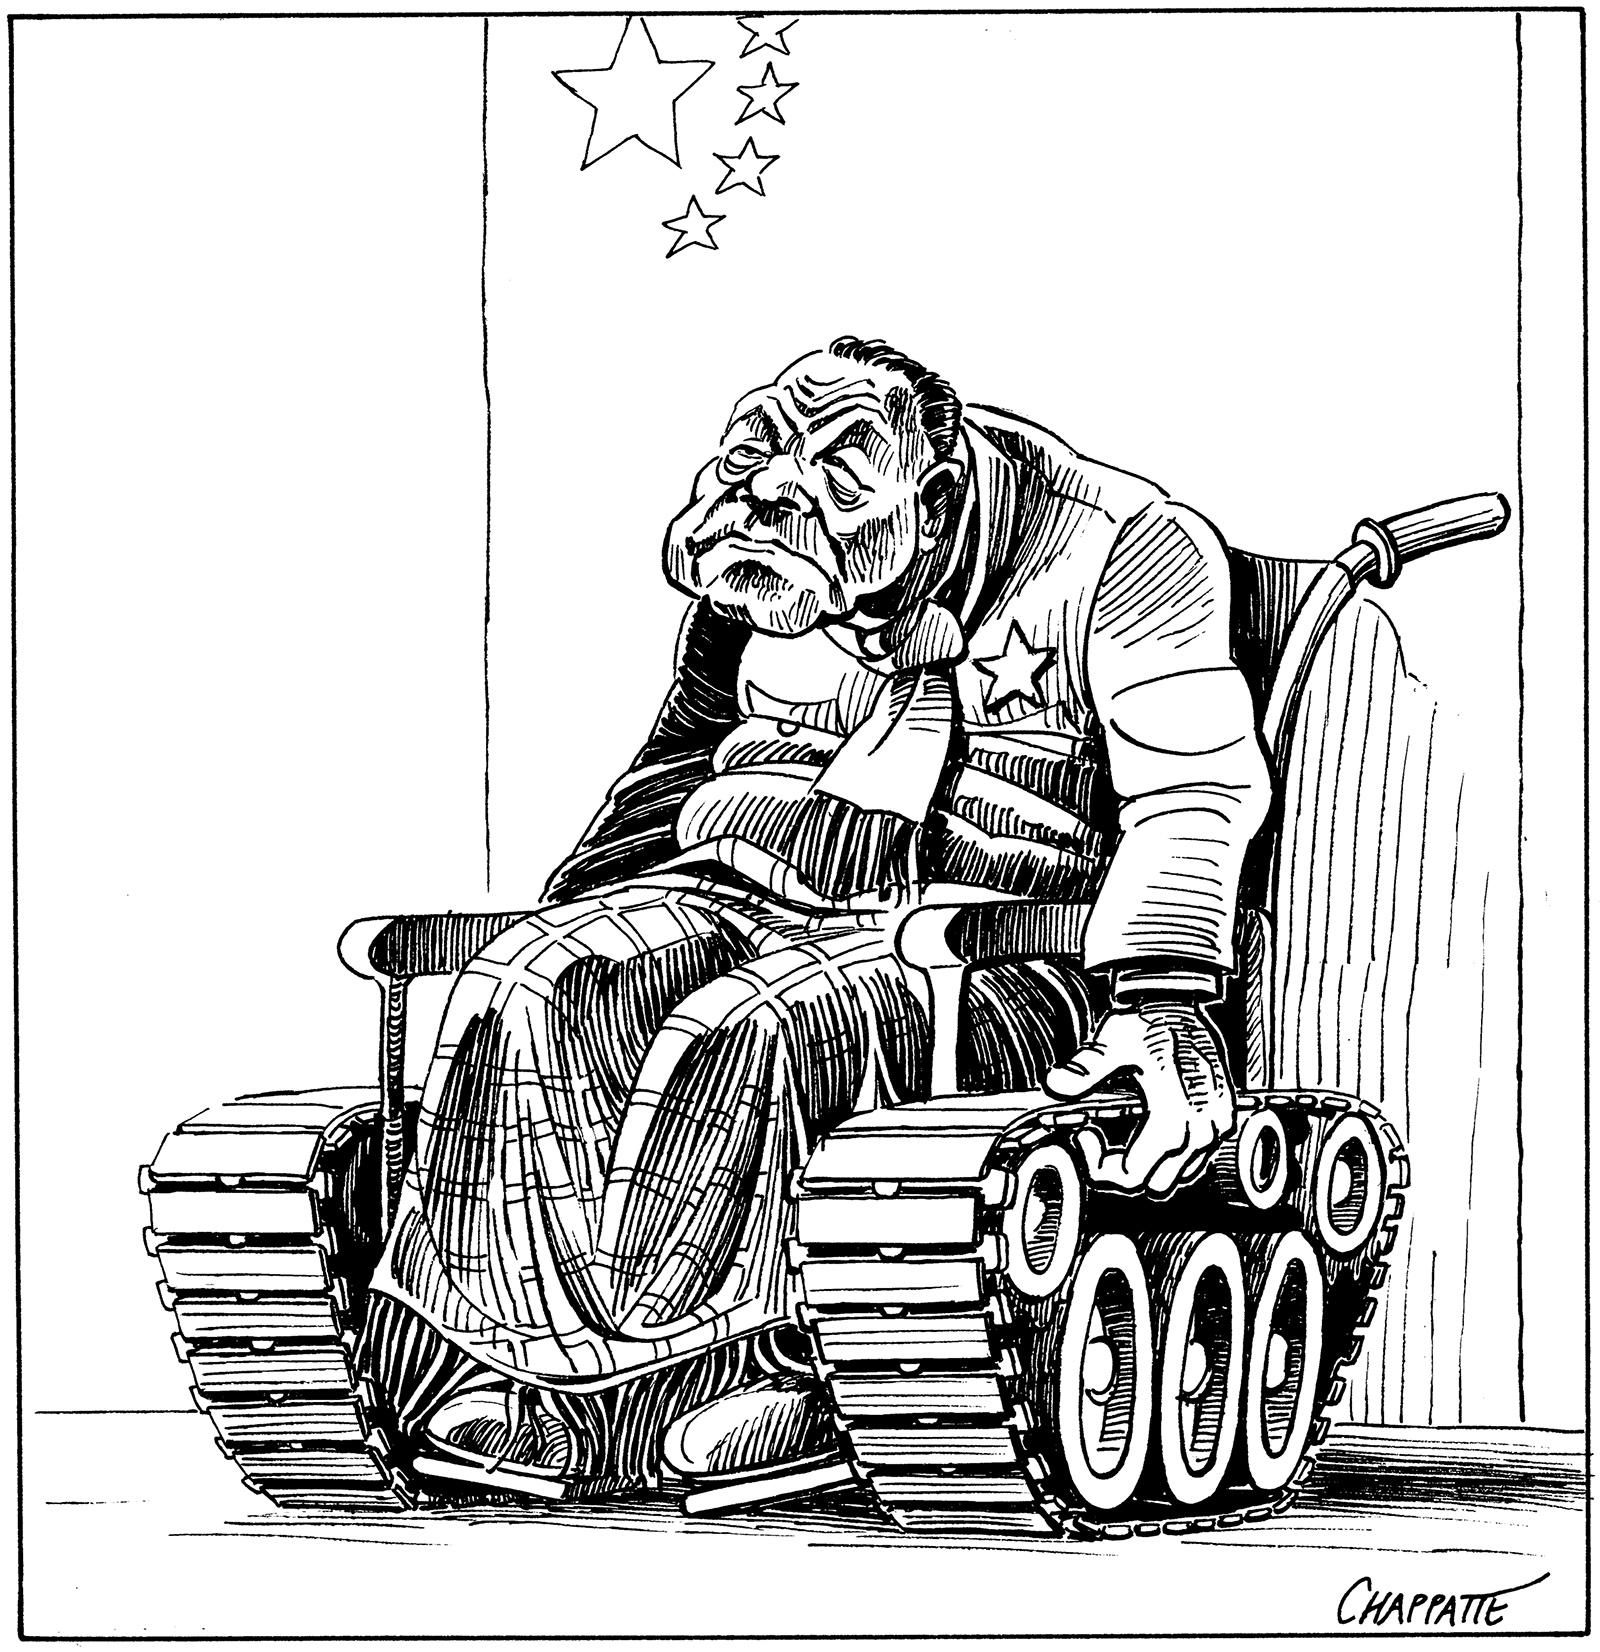 Deng Xiaoping after Tiananmen (Cartoon published June 17, 1989)